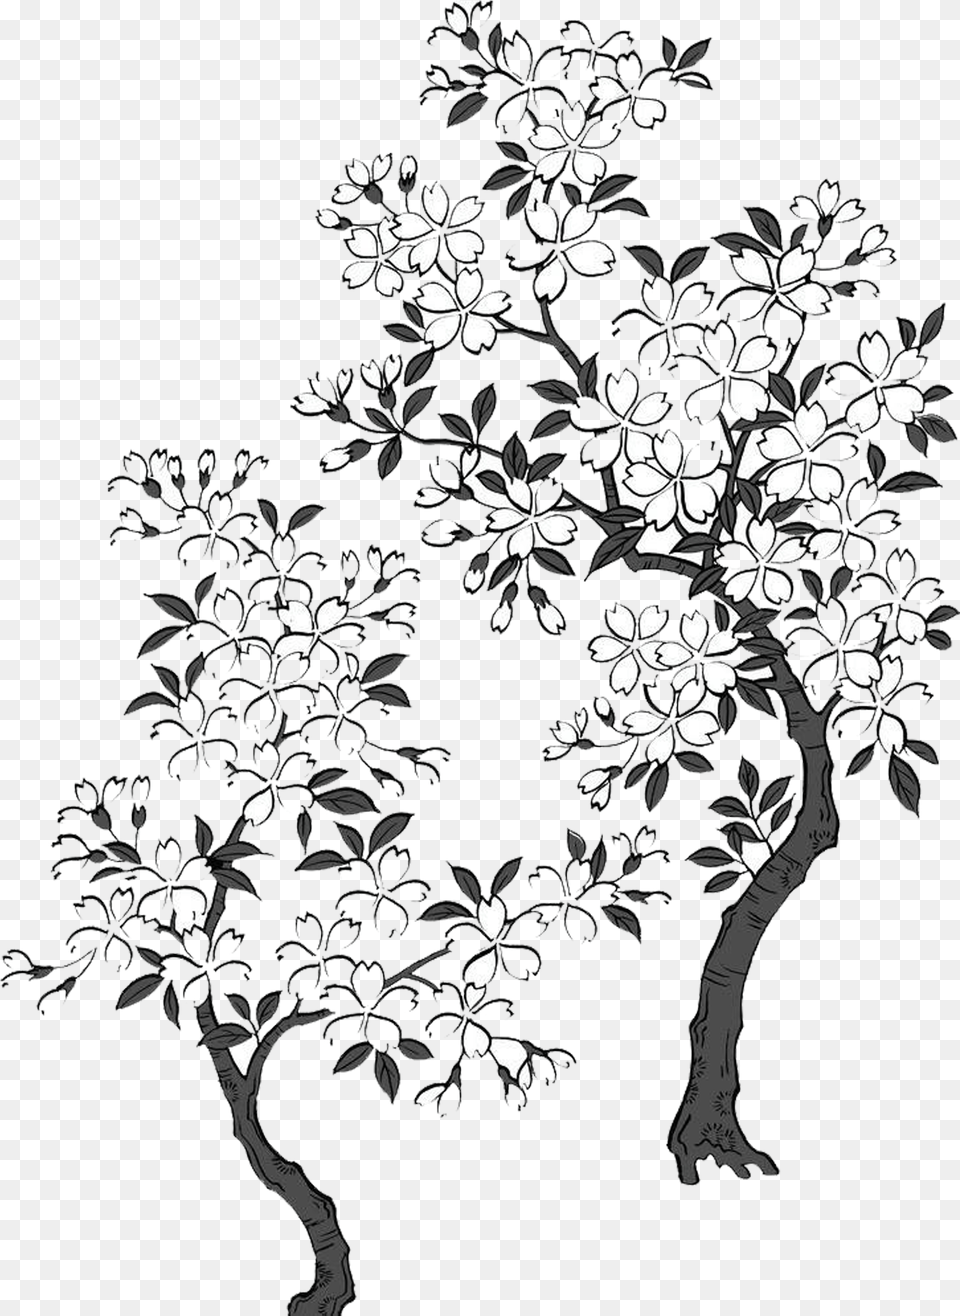 Sakura Tree Transparent U0026 Clipart Download Ywd White Sakura Tree Art, Floral Design, Graphics, Pattern, Chandelier Png